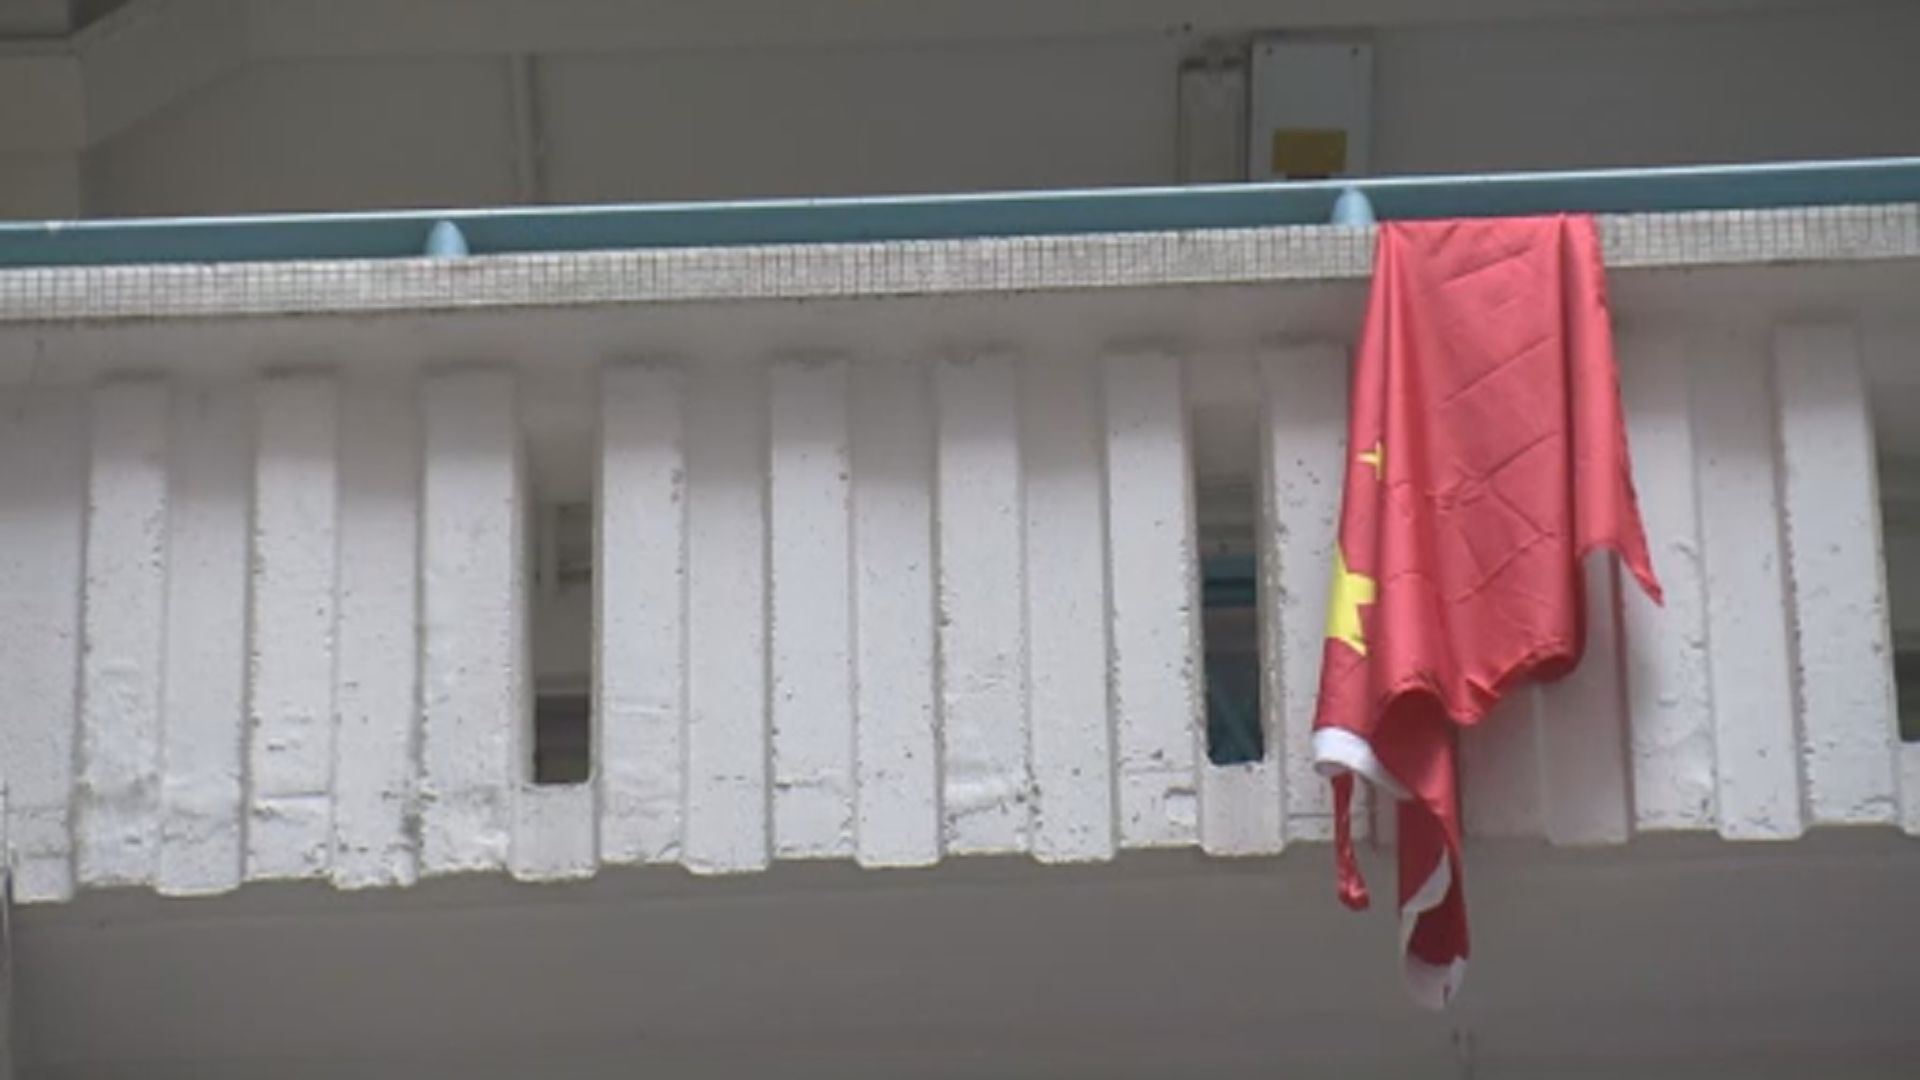 坪石邨藍石樓有國旗被破壞塗污　警接報調查